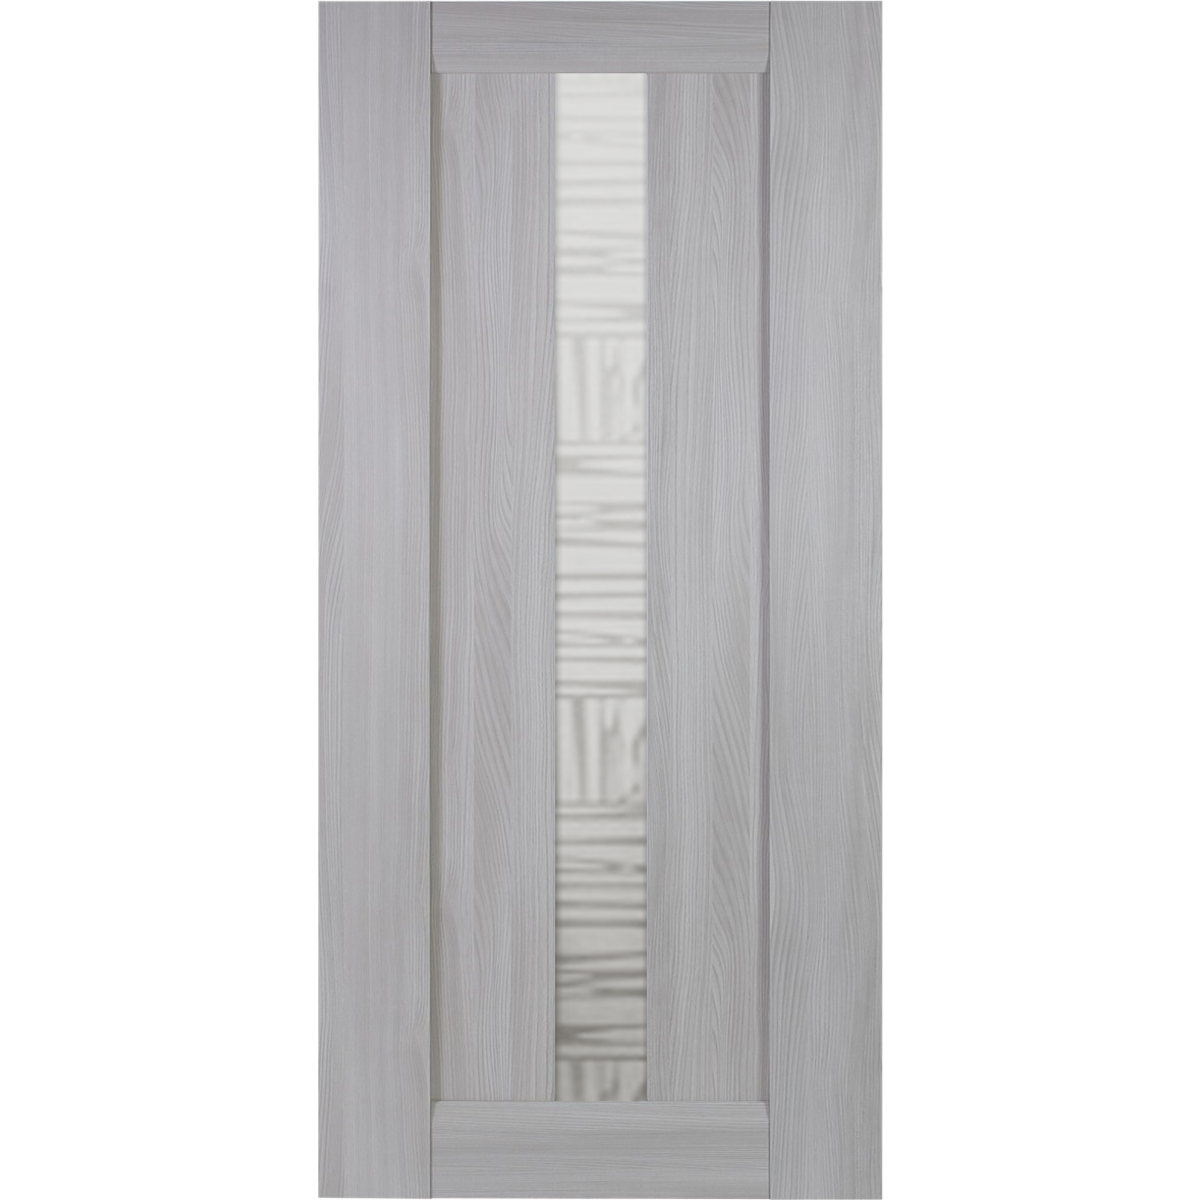 Дверь межкомнатная остекленная Челси 70x200 см, цвет ясень скандинавский